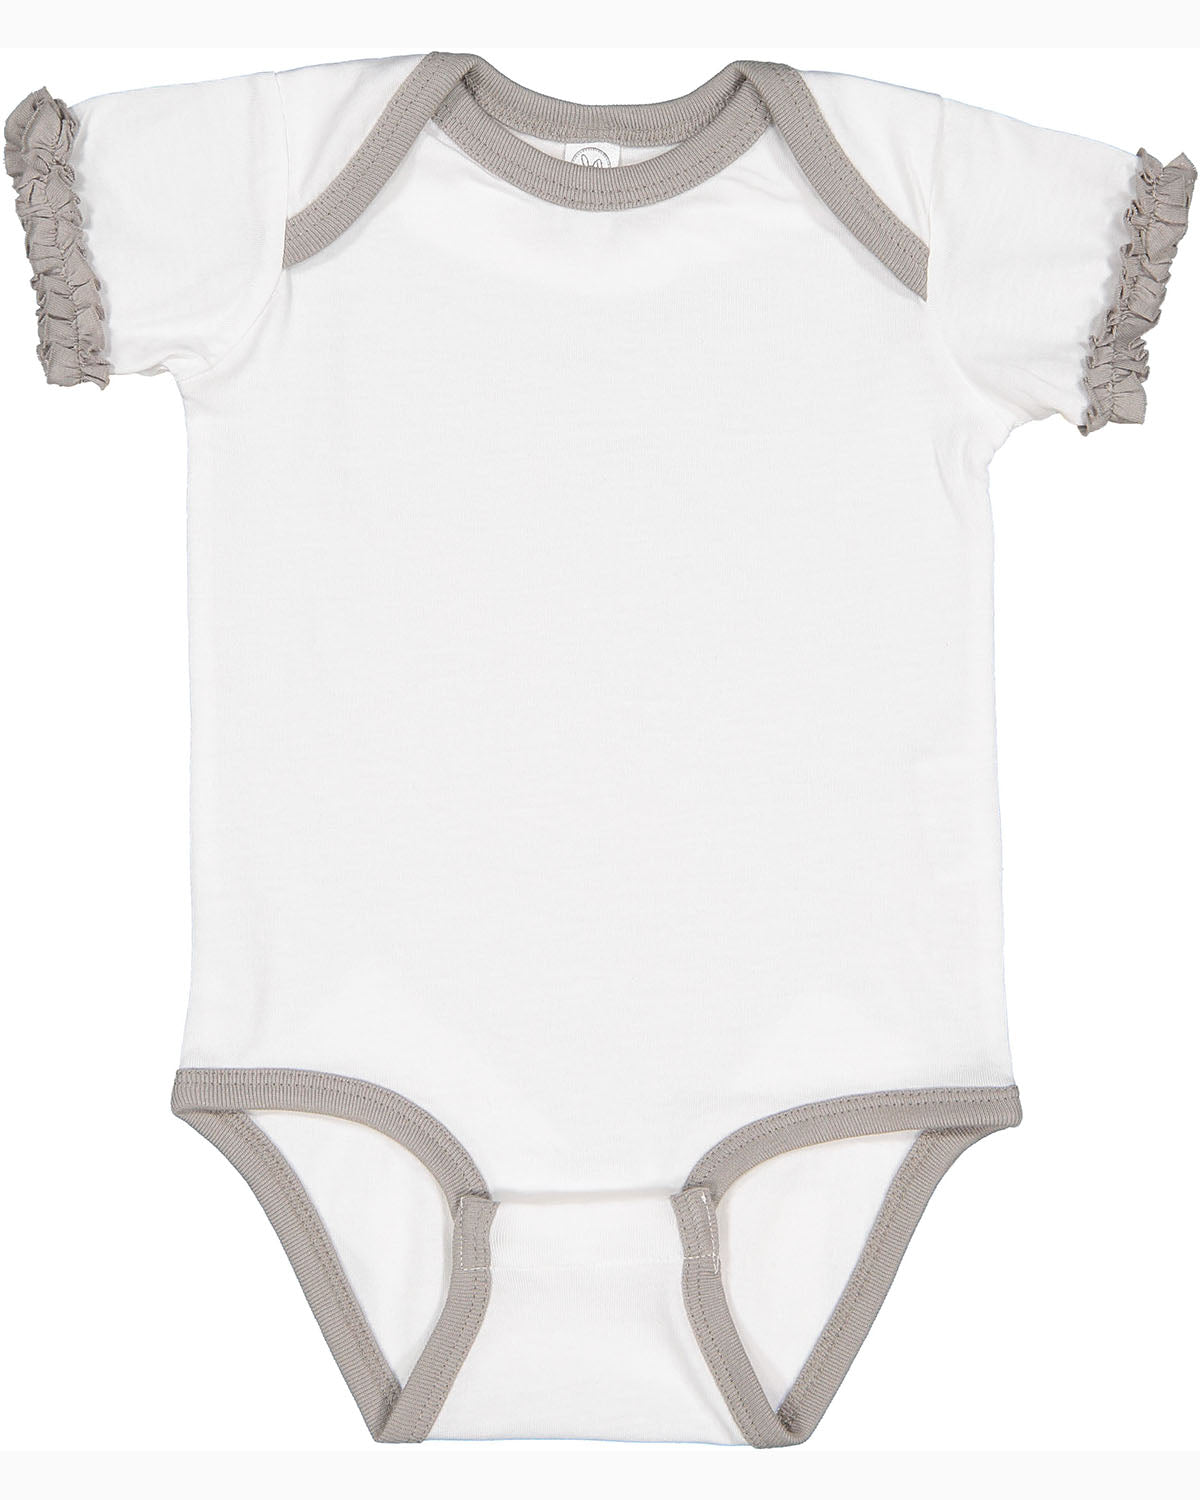 Infant Ruffle Fine Jersey Bodysuit - 4429